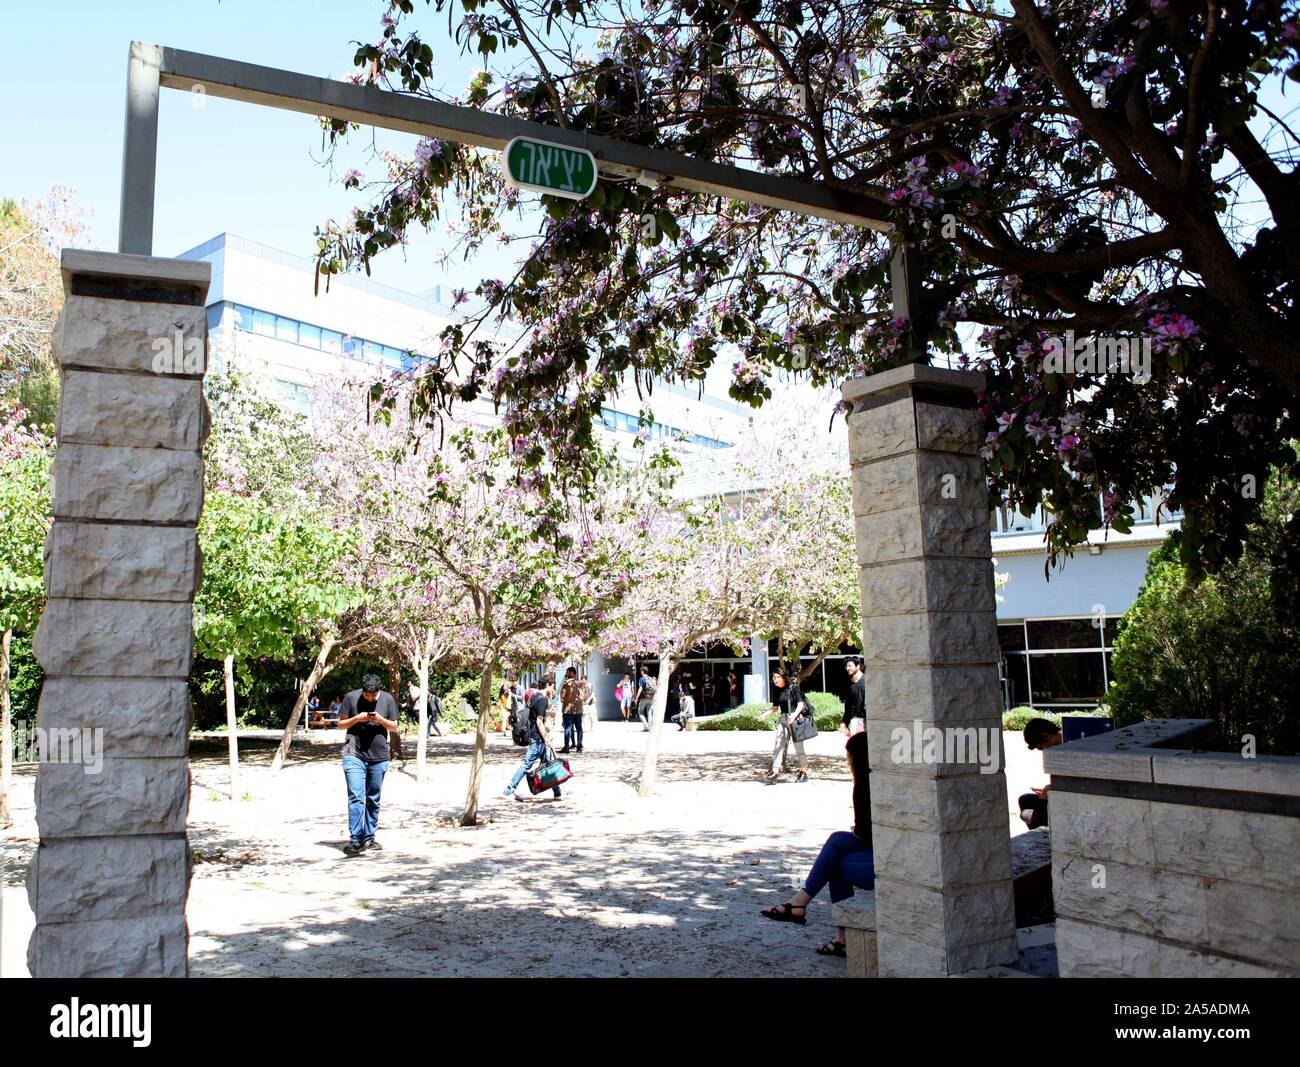 HAIFA, Israele - 23 Maggio 2019: facoltà edificio nel "Technion" - Istituto Israeliano di Tecnologia che è considerato essere uno dei leader di academic Foto Stock